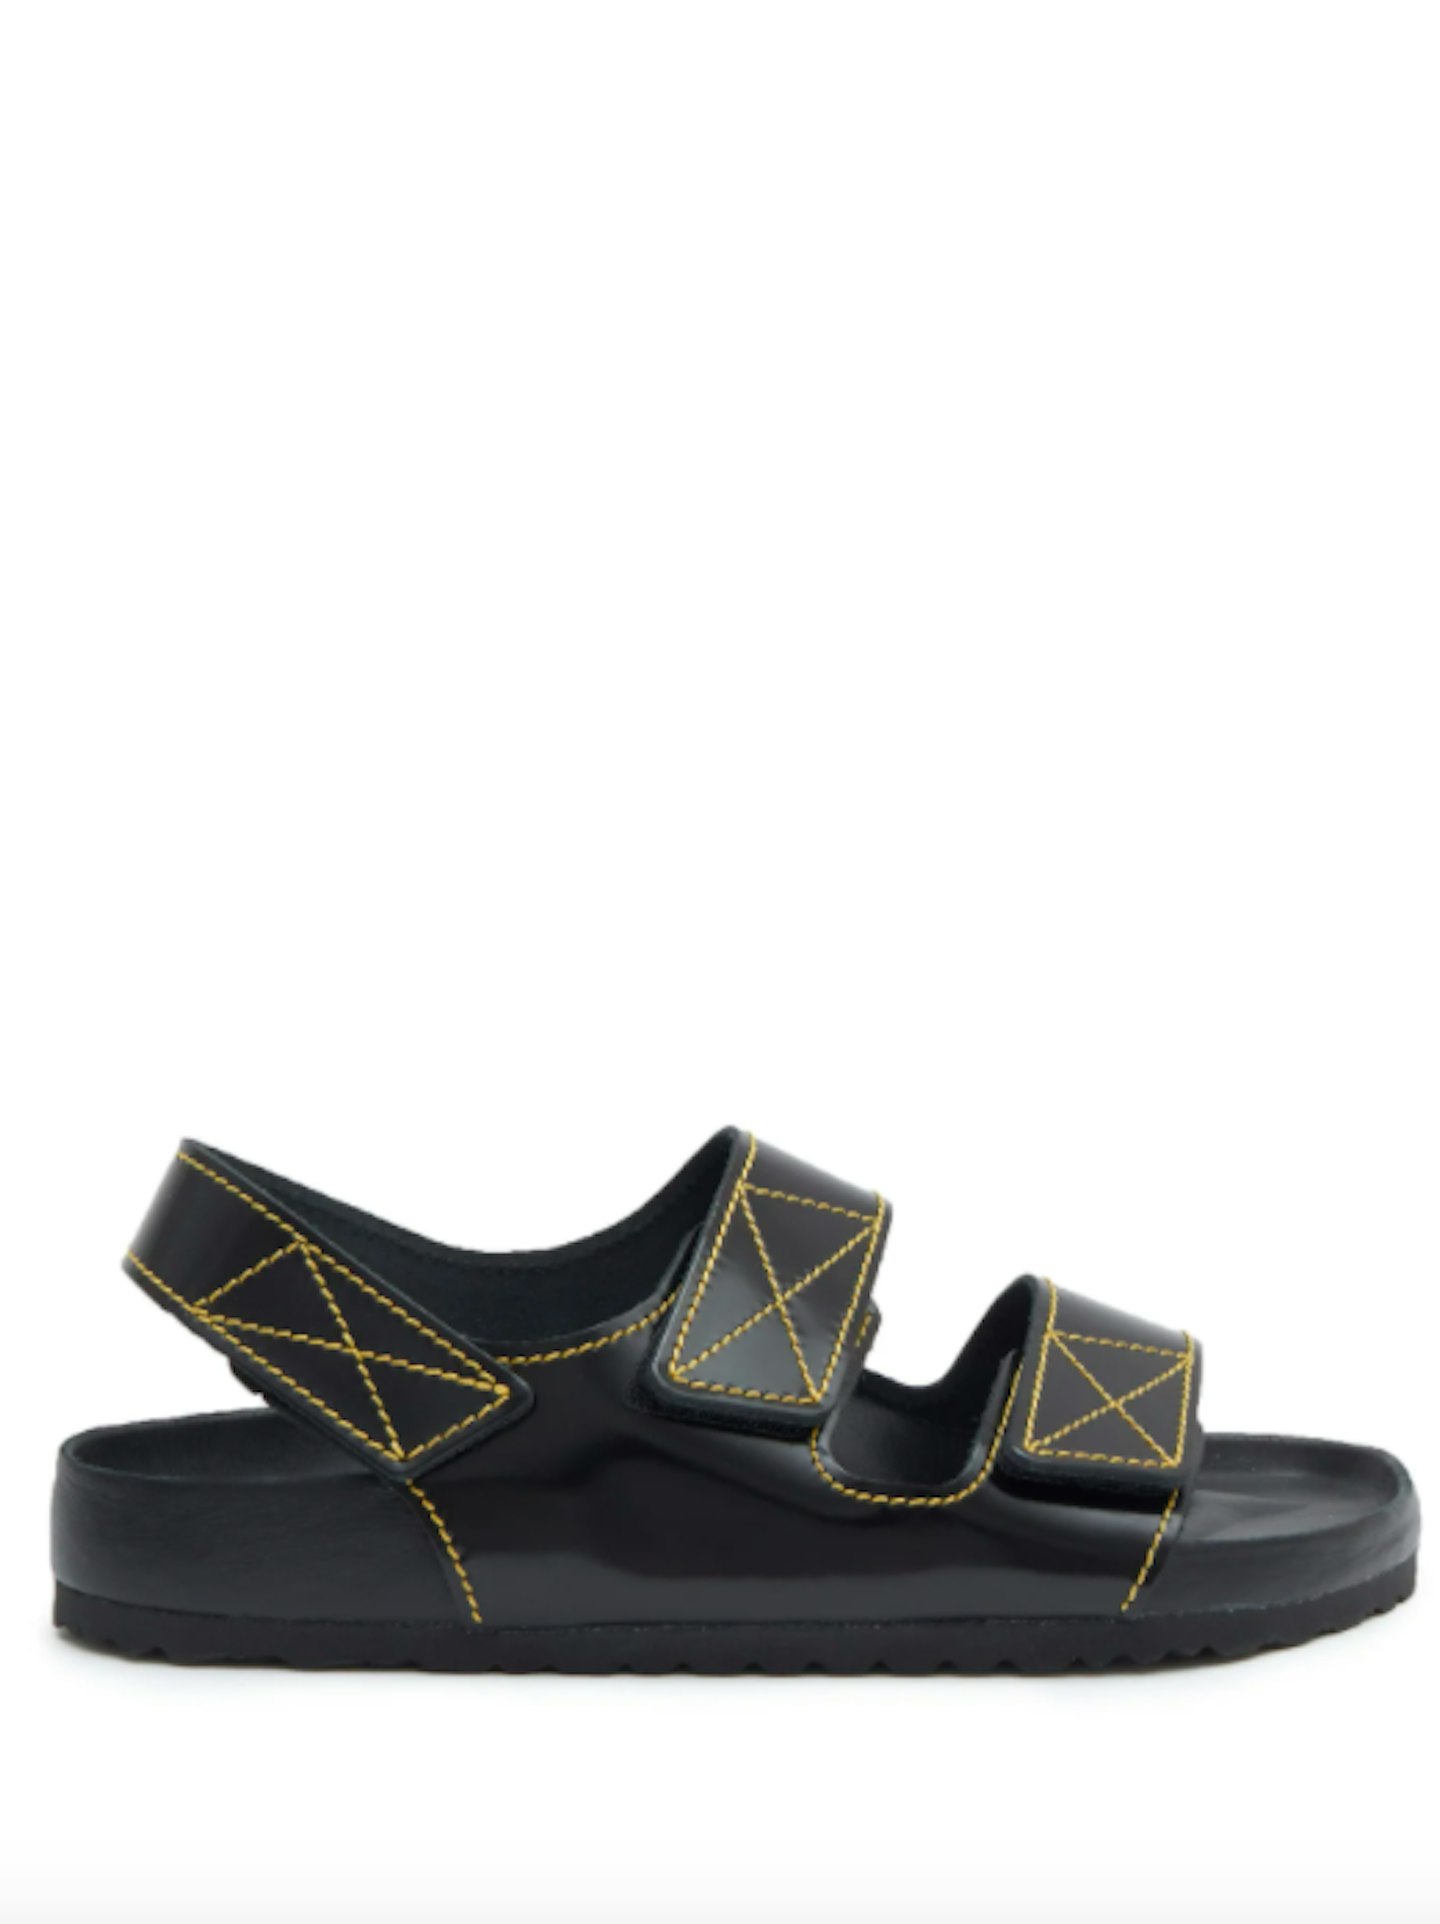 Birkenstock X Proenza Schouler, Milano Sandals, £360